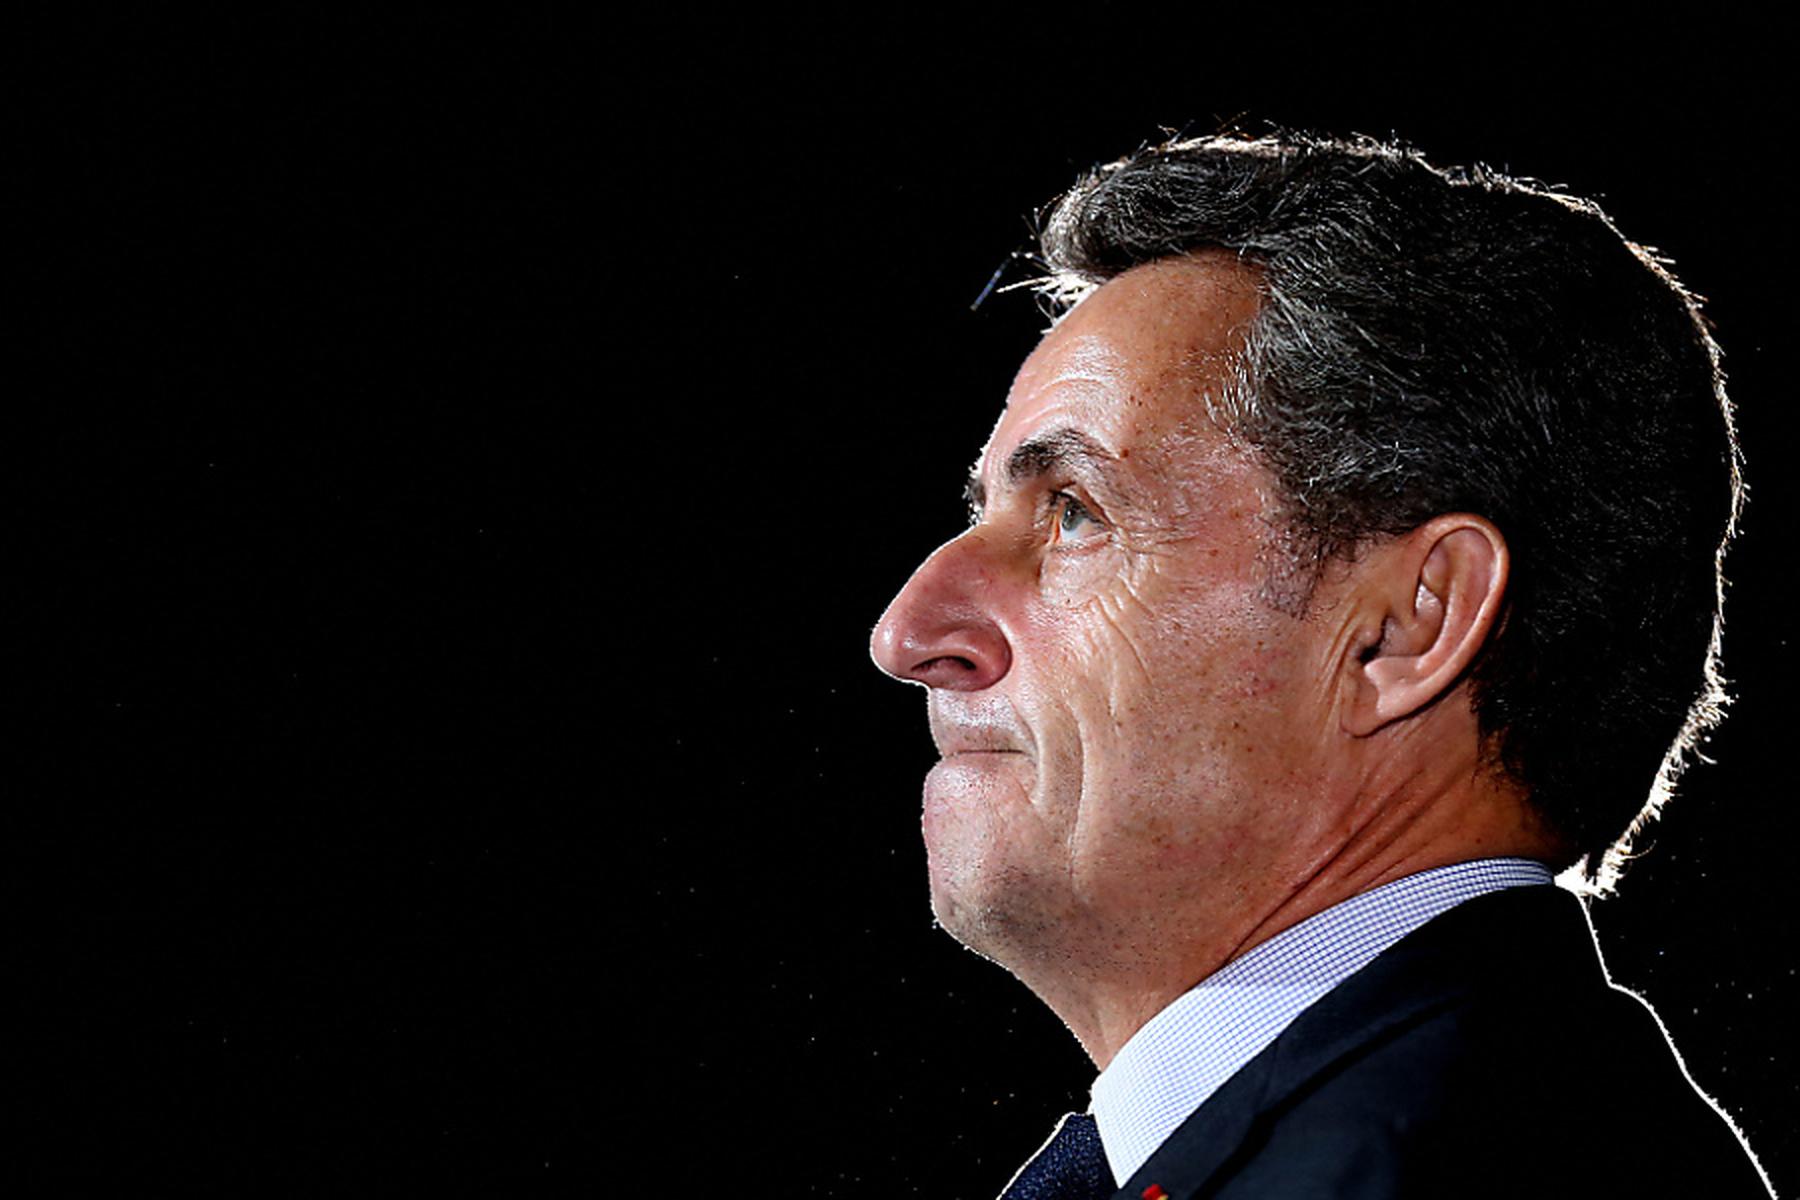 Paris | Urteil für Sarkozy in Wahlkampfkosten-Affäre erwartet